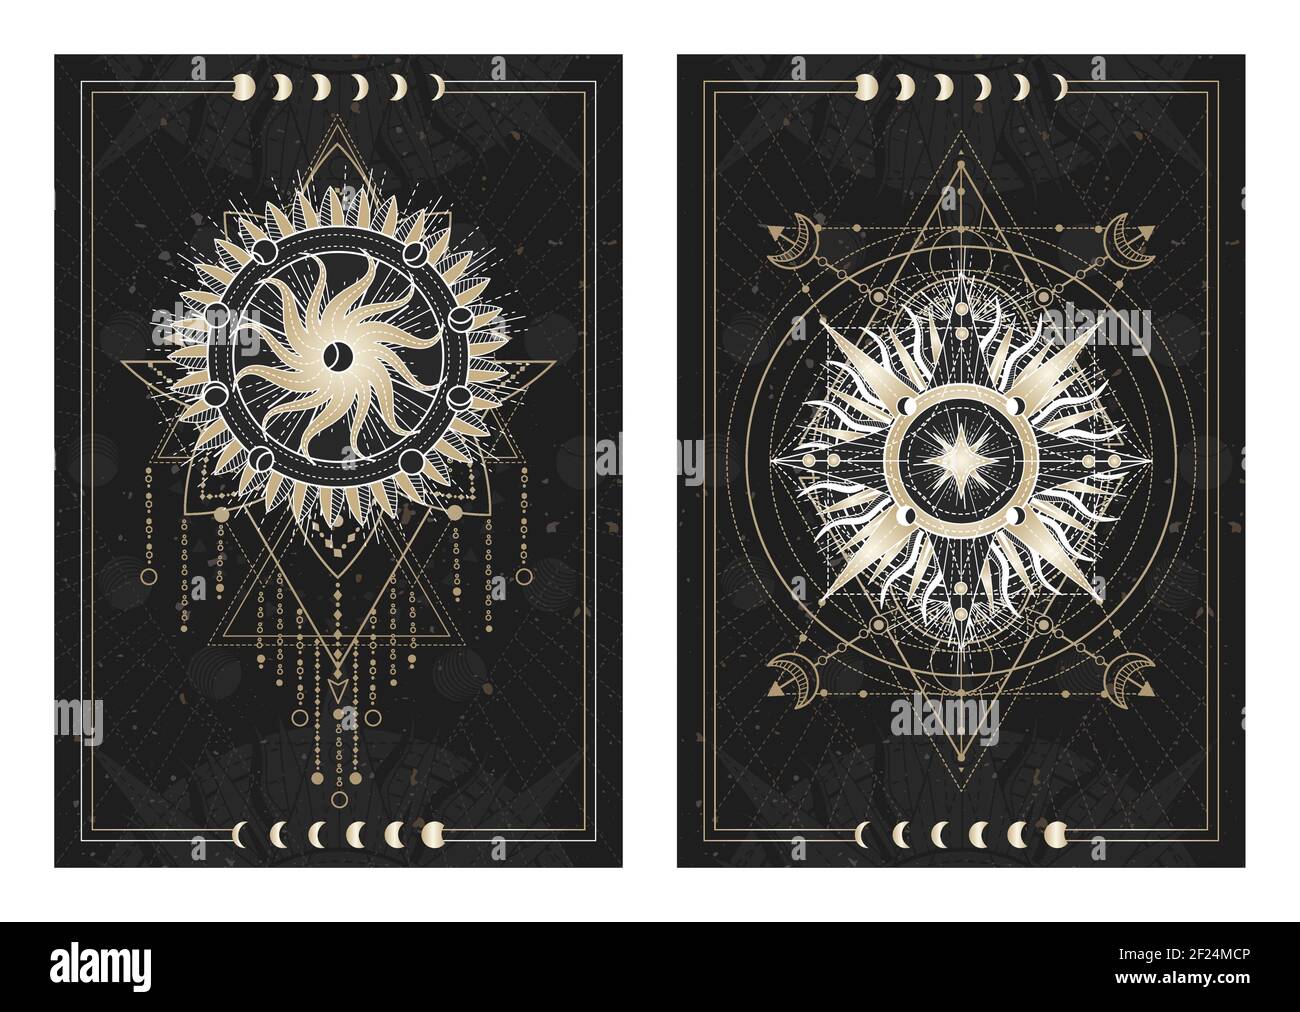 Vektor dunkle Illustrationen mit heiligen Geometriesymbolen, Grunge Texturen und Rahmen. Bilder in schwarz, weiß und Gold. Stock Vektor